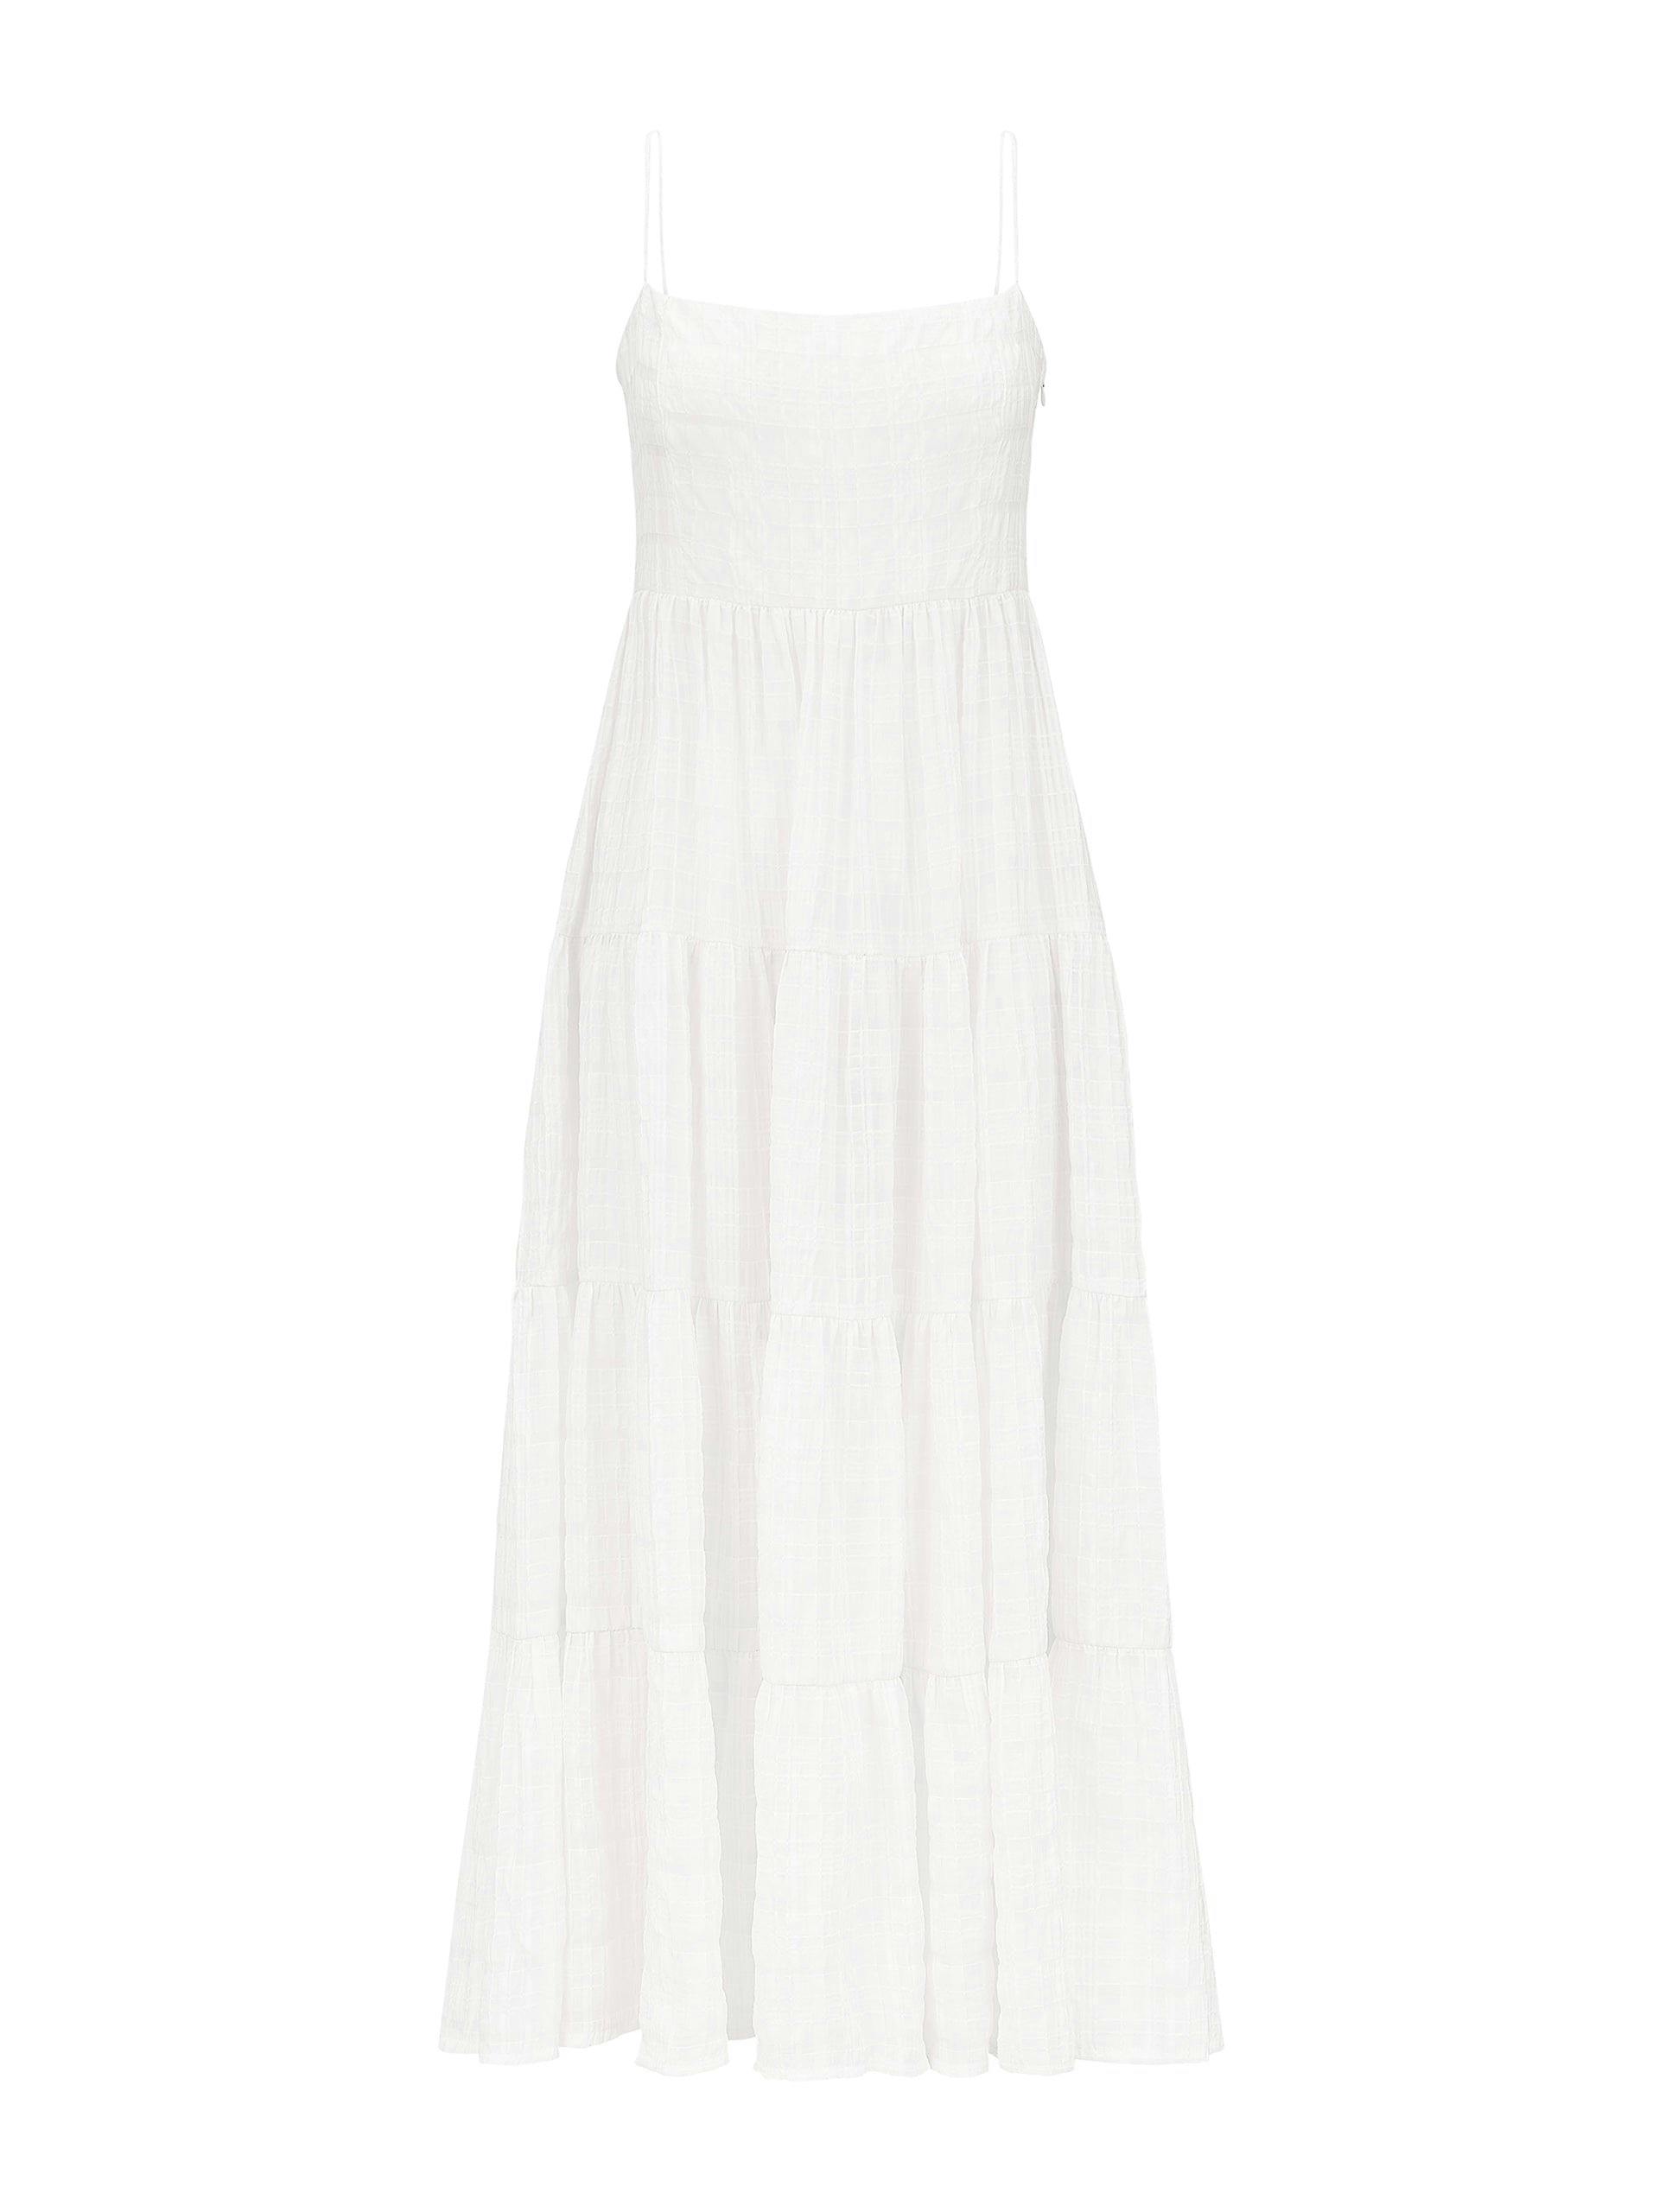 White textured check Marta dress